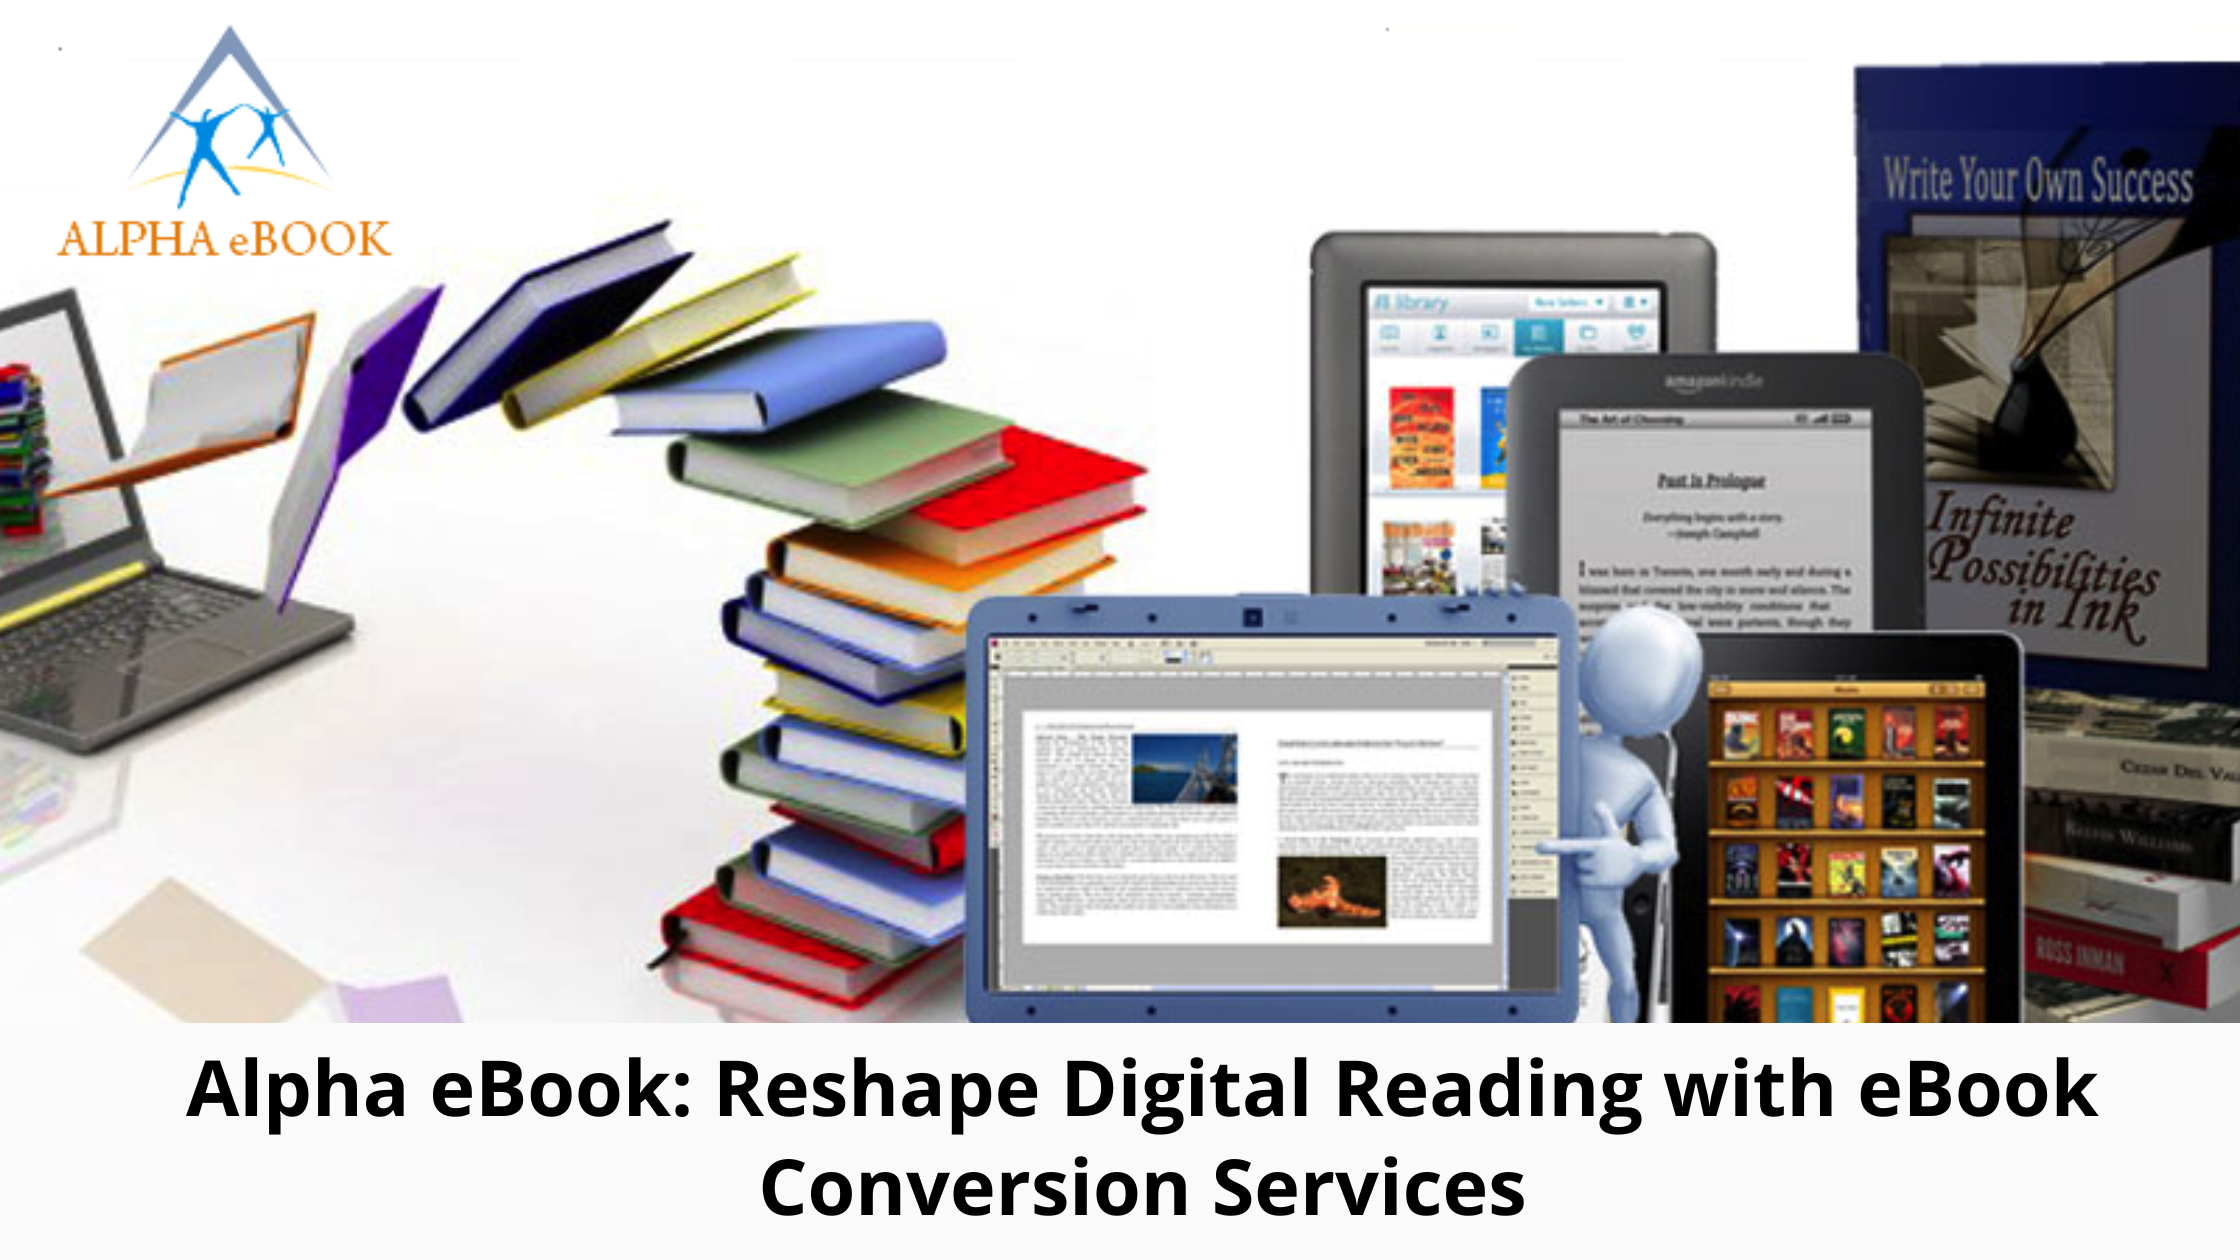 Alpha eBook改造数字阅读体验,提供电子书转换服务